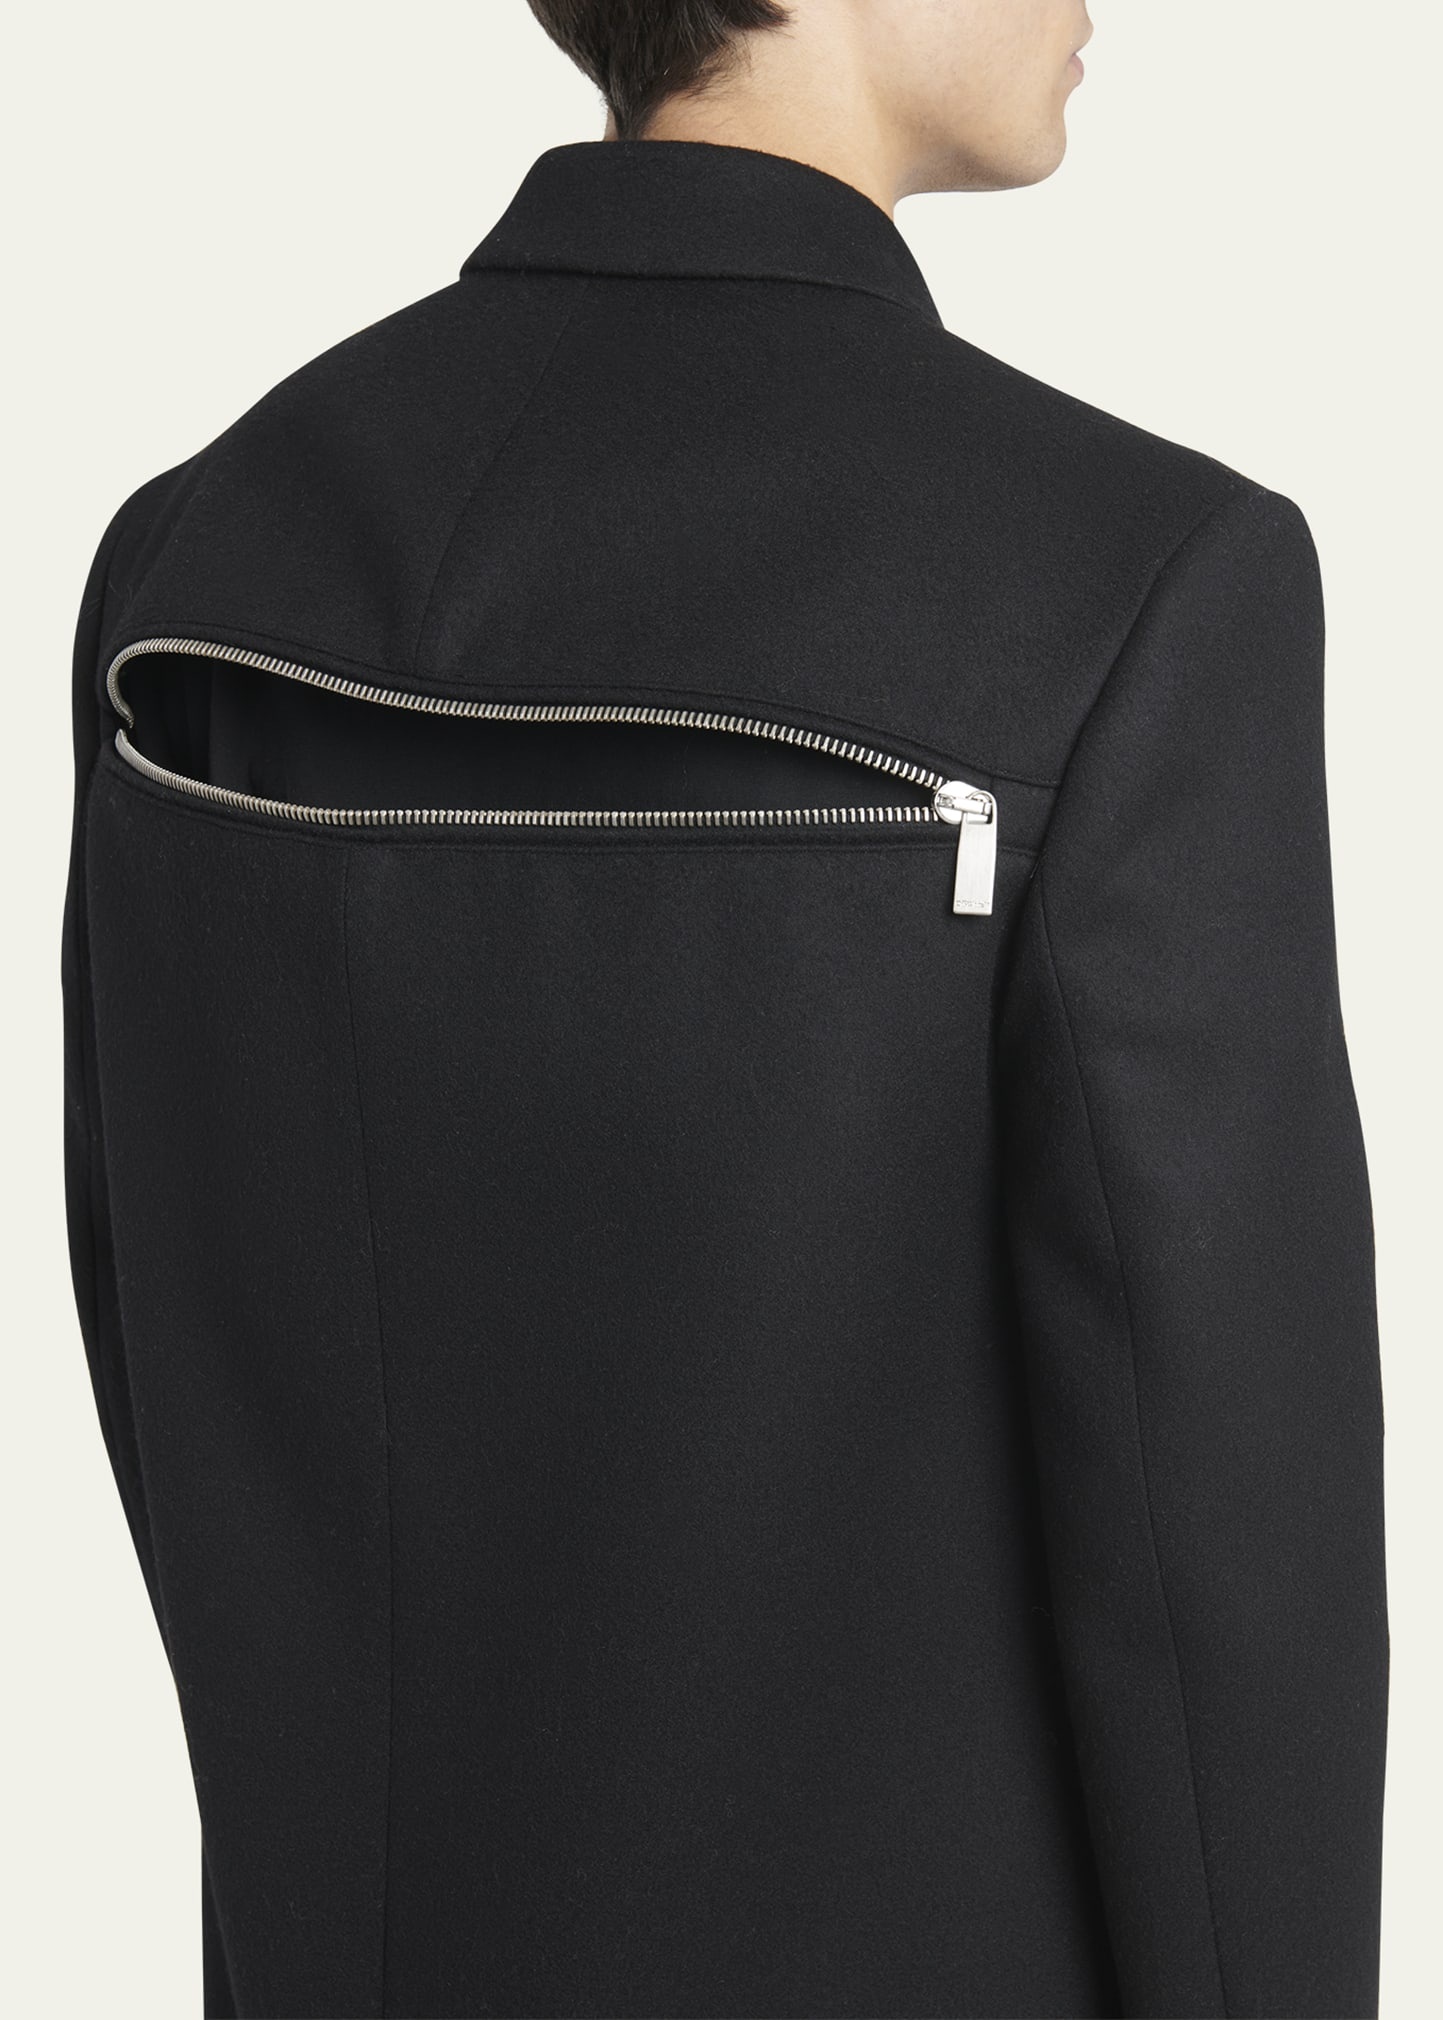 Men's Topcoat with Zipper Details - 5